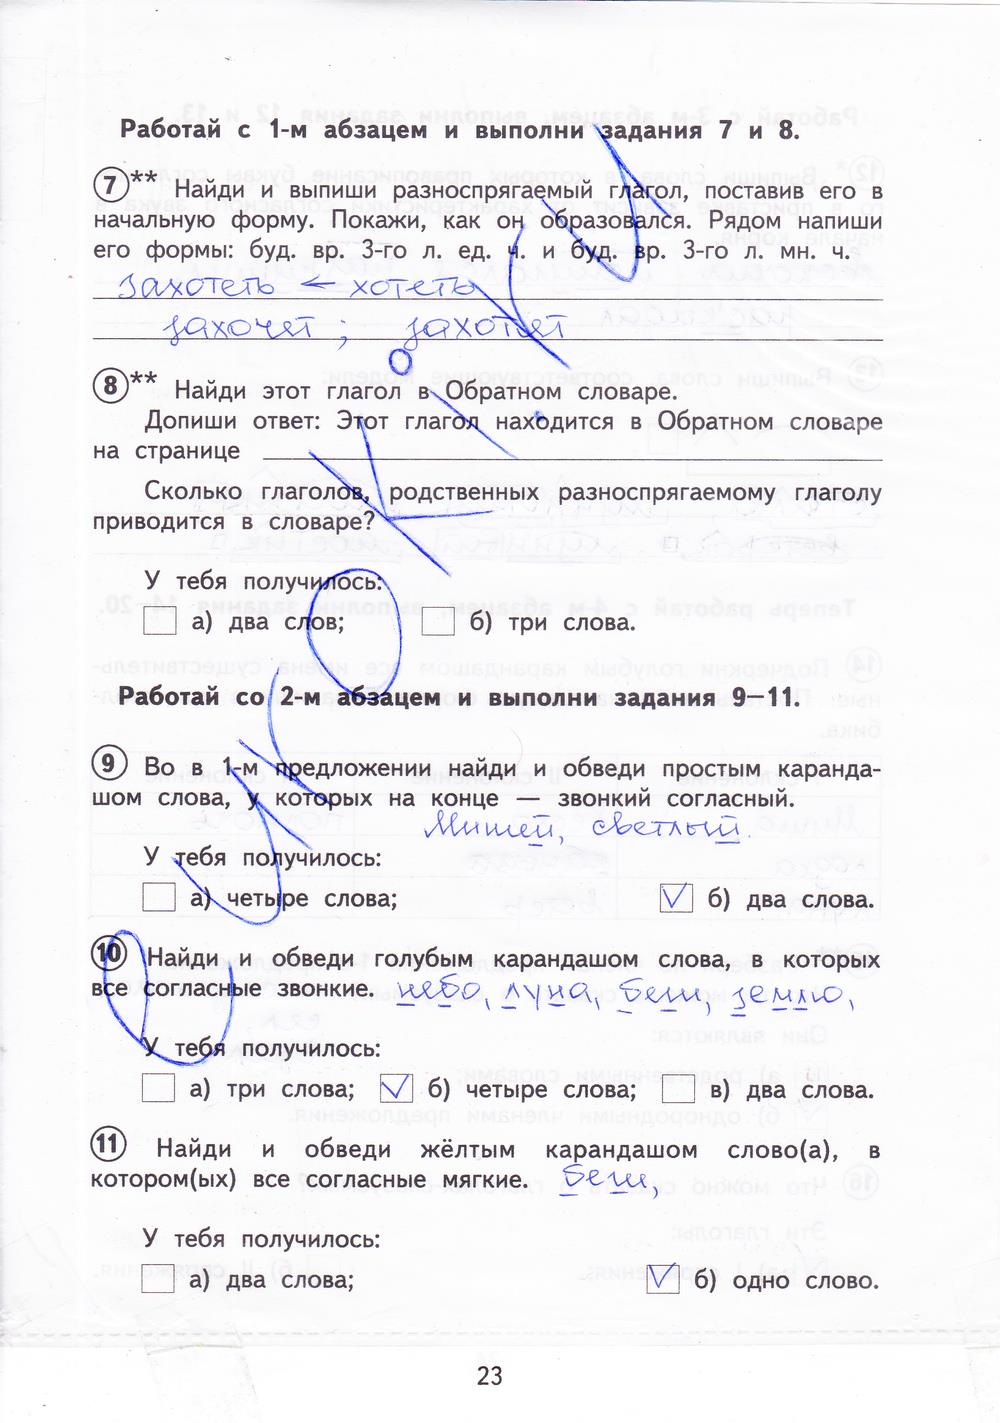 гдз 4 класс тетрадь для проверочных работ страница 23 русский язык Лаврова